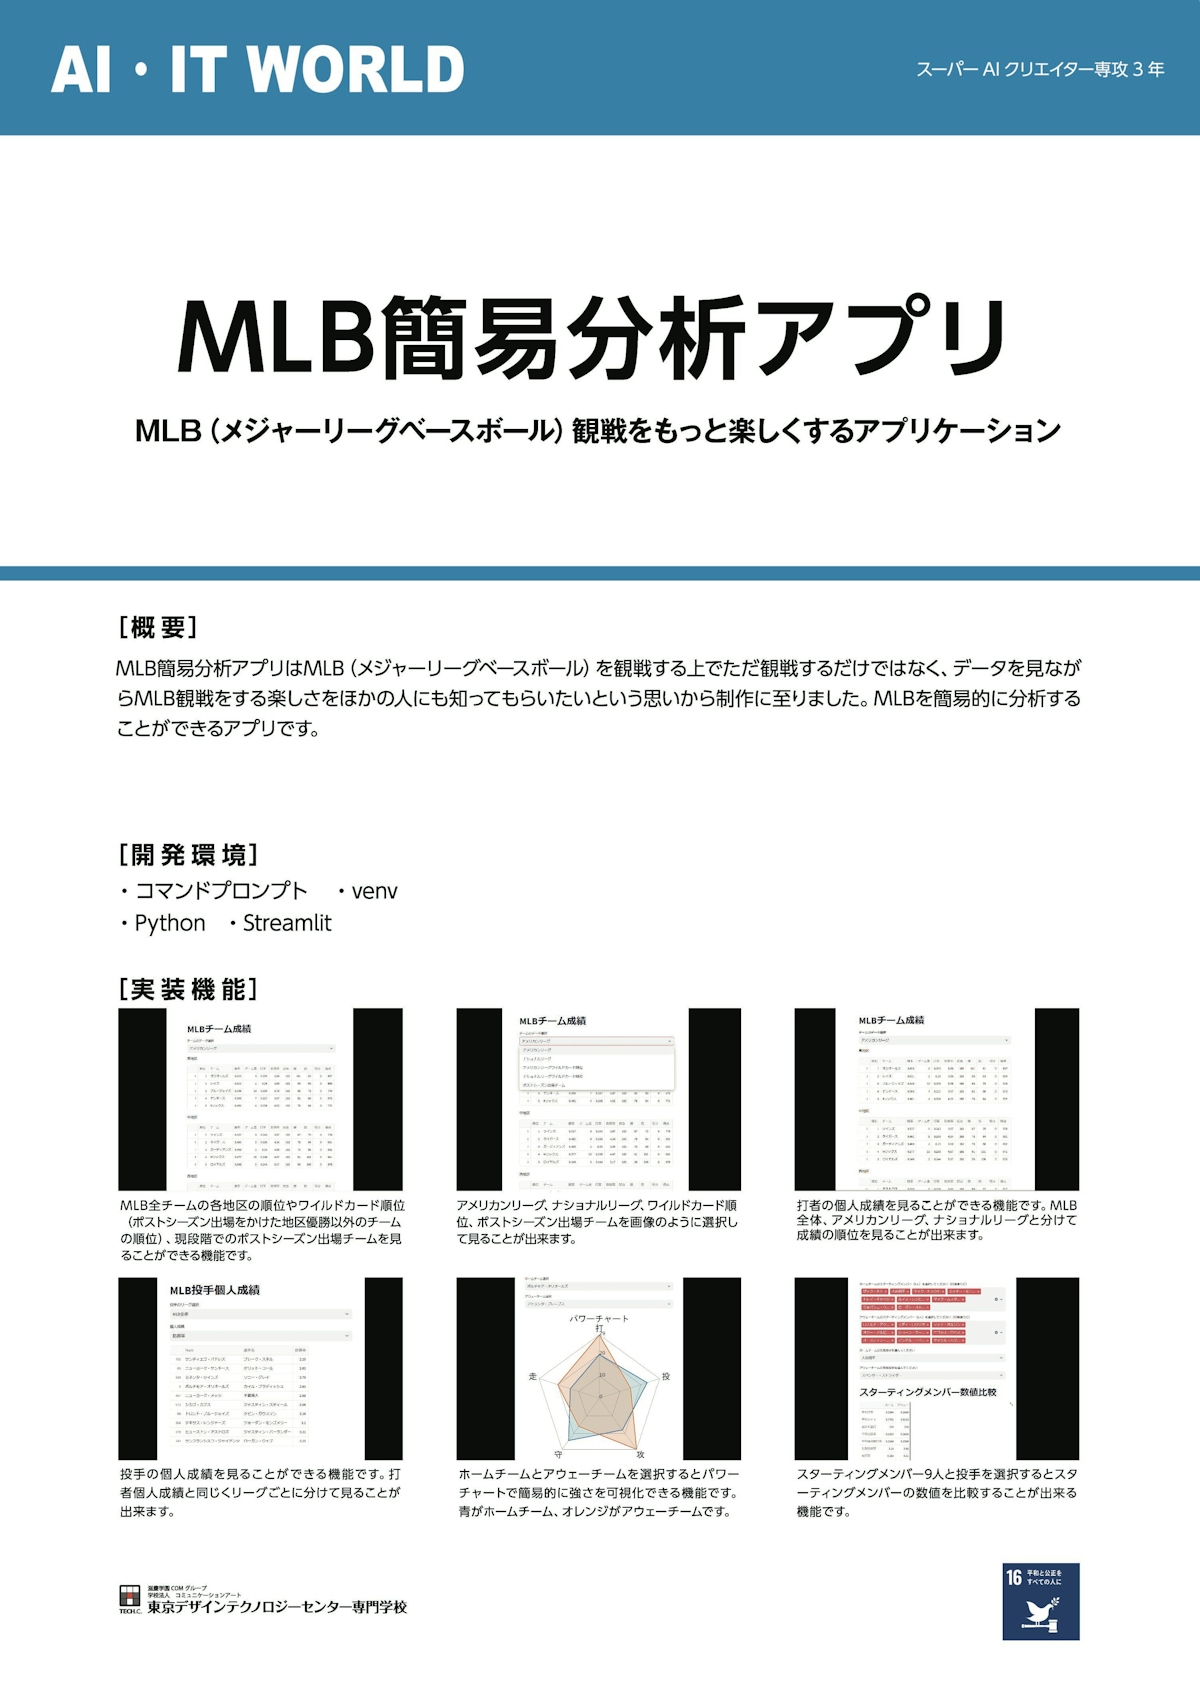 MLB簡易分析アプリ